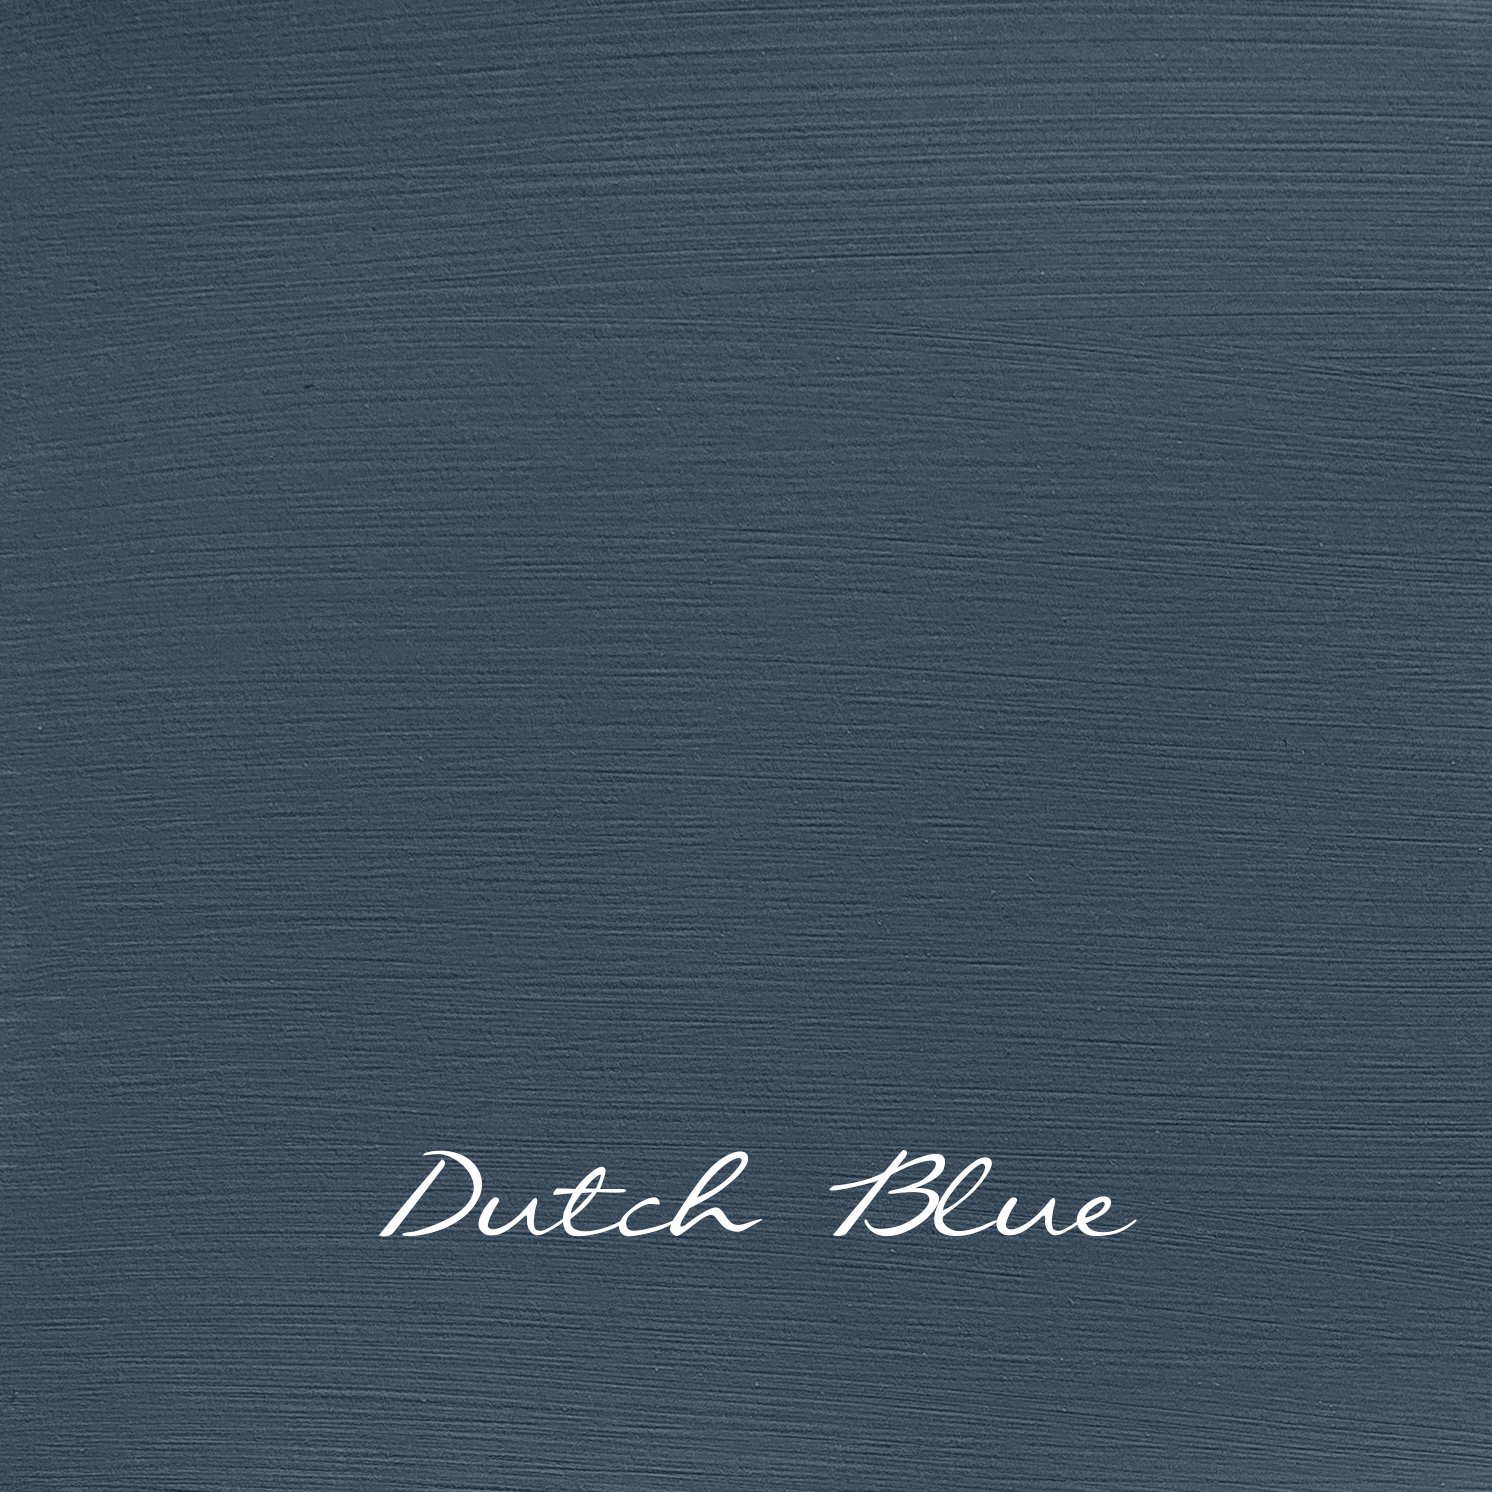 Dutch Blue "Autentico Vintage"